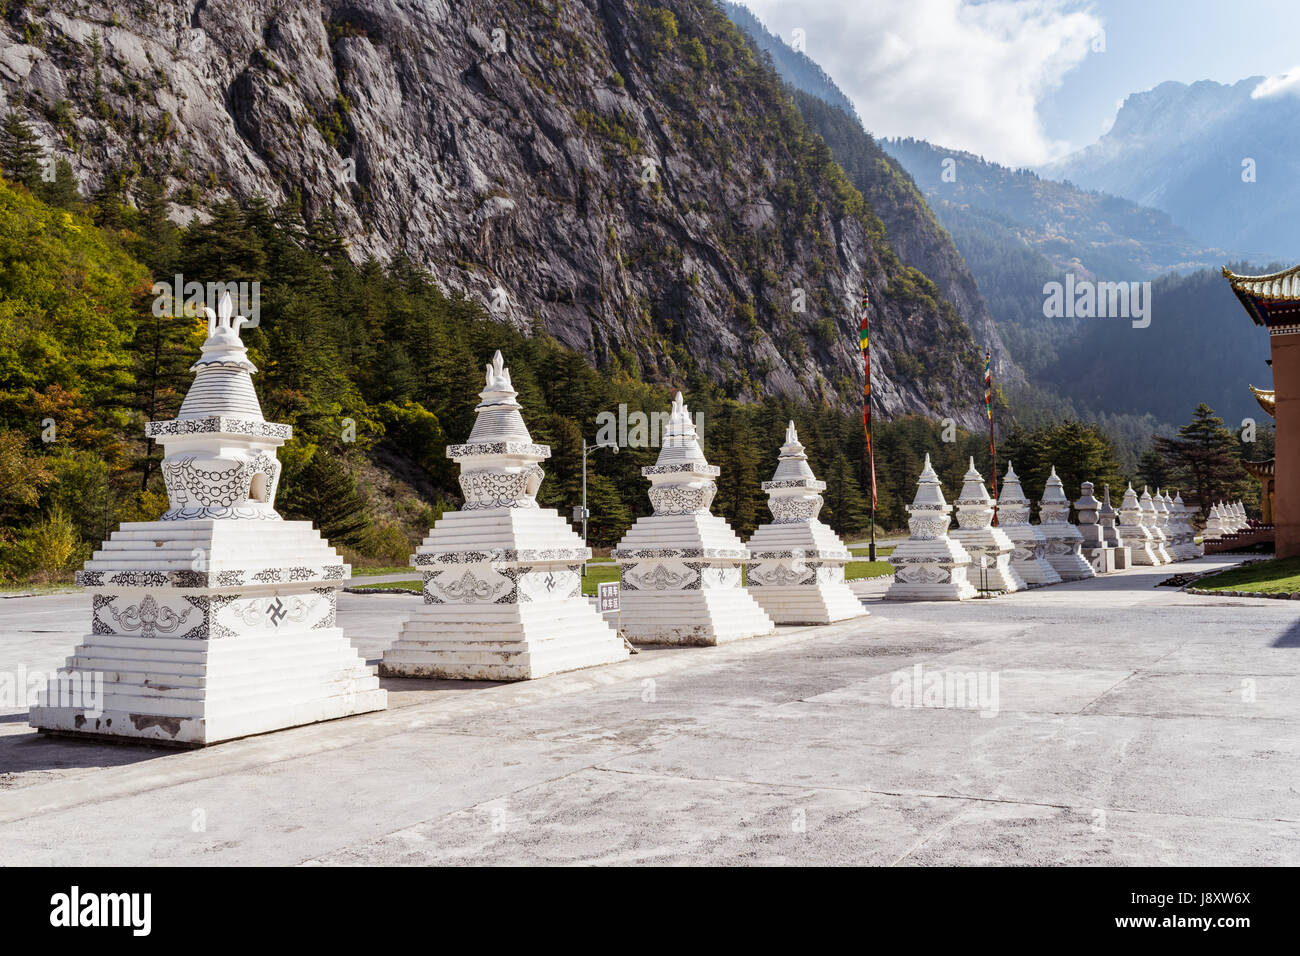 Stupa tibetano architettura (stupa) in una fila, montagne sullo sfondo Foto Stock